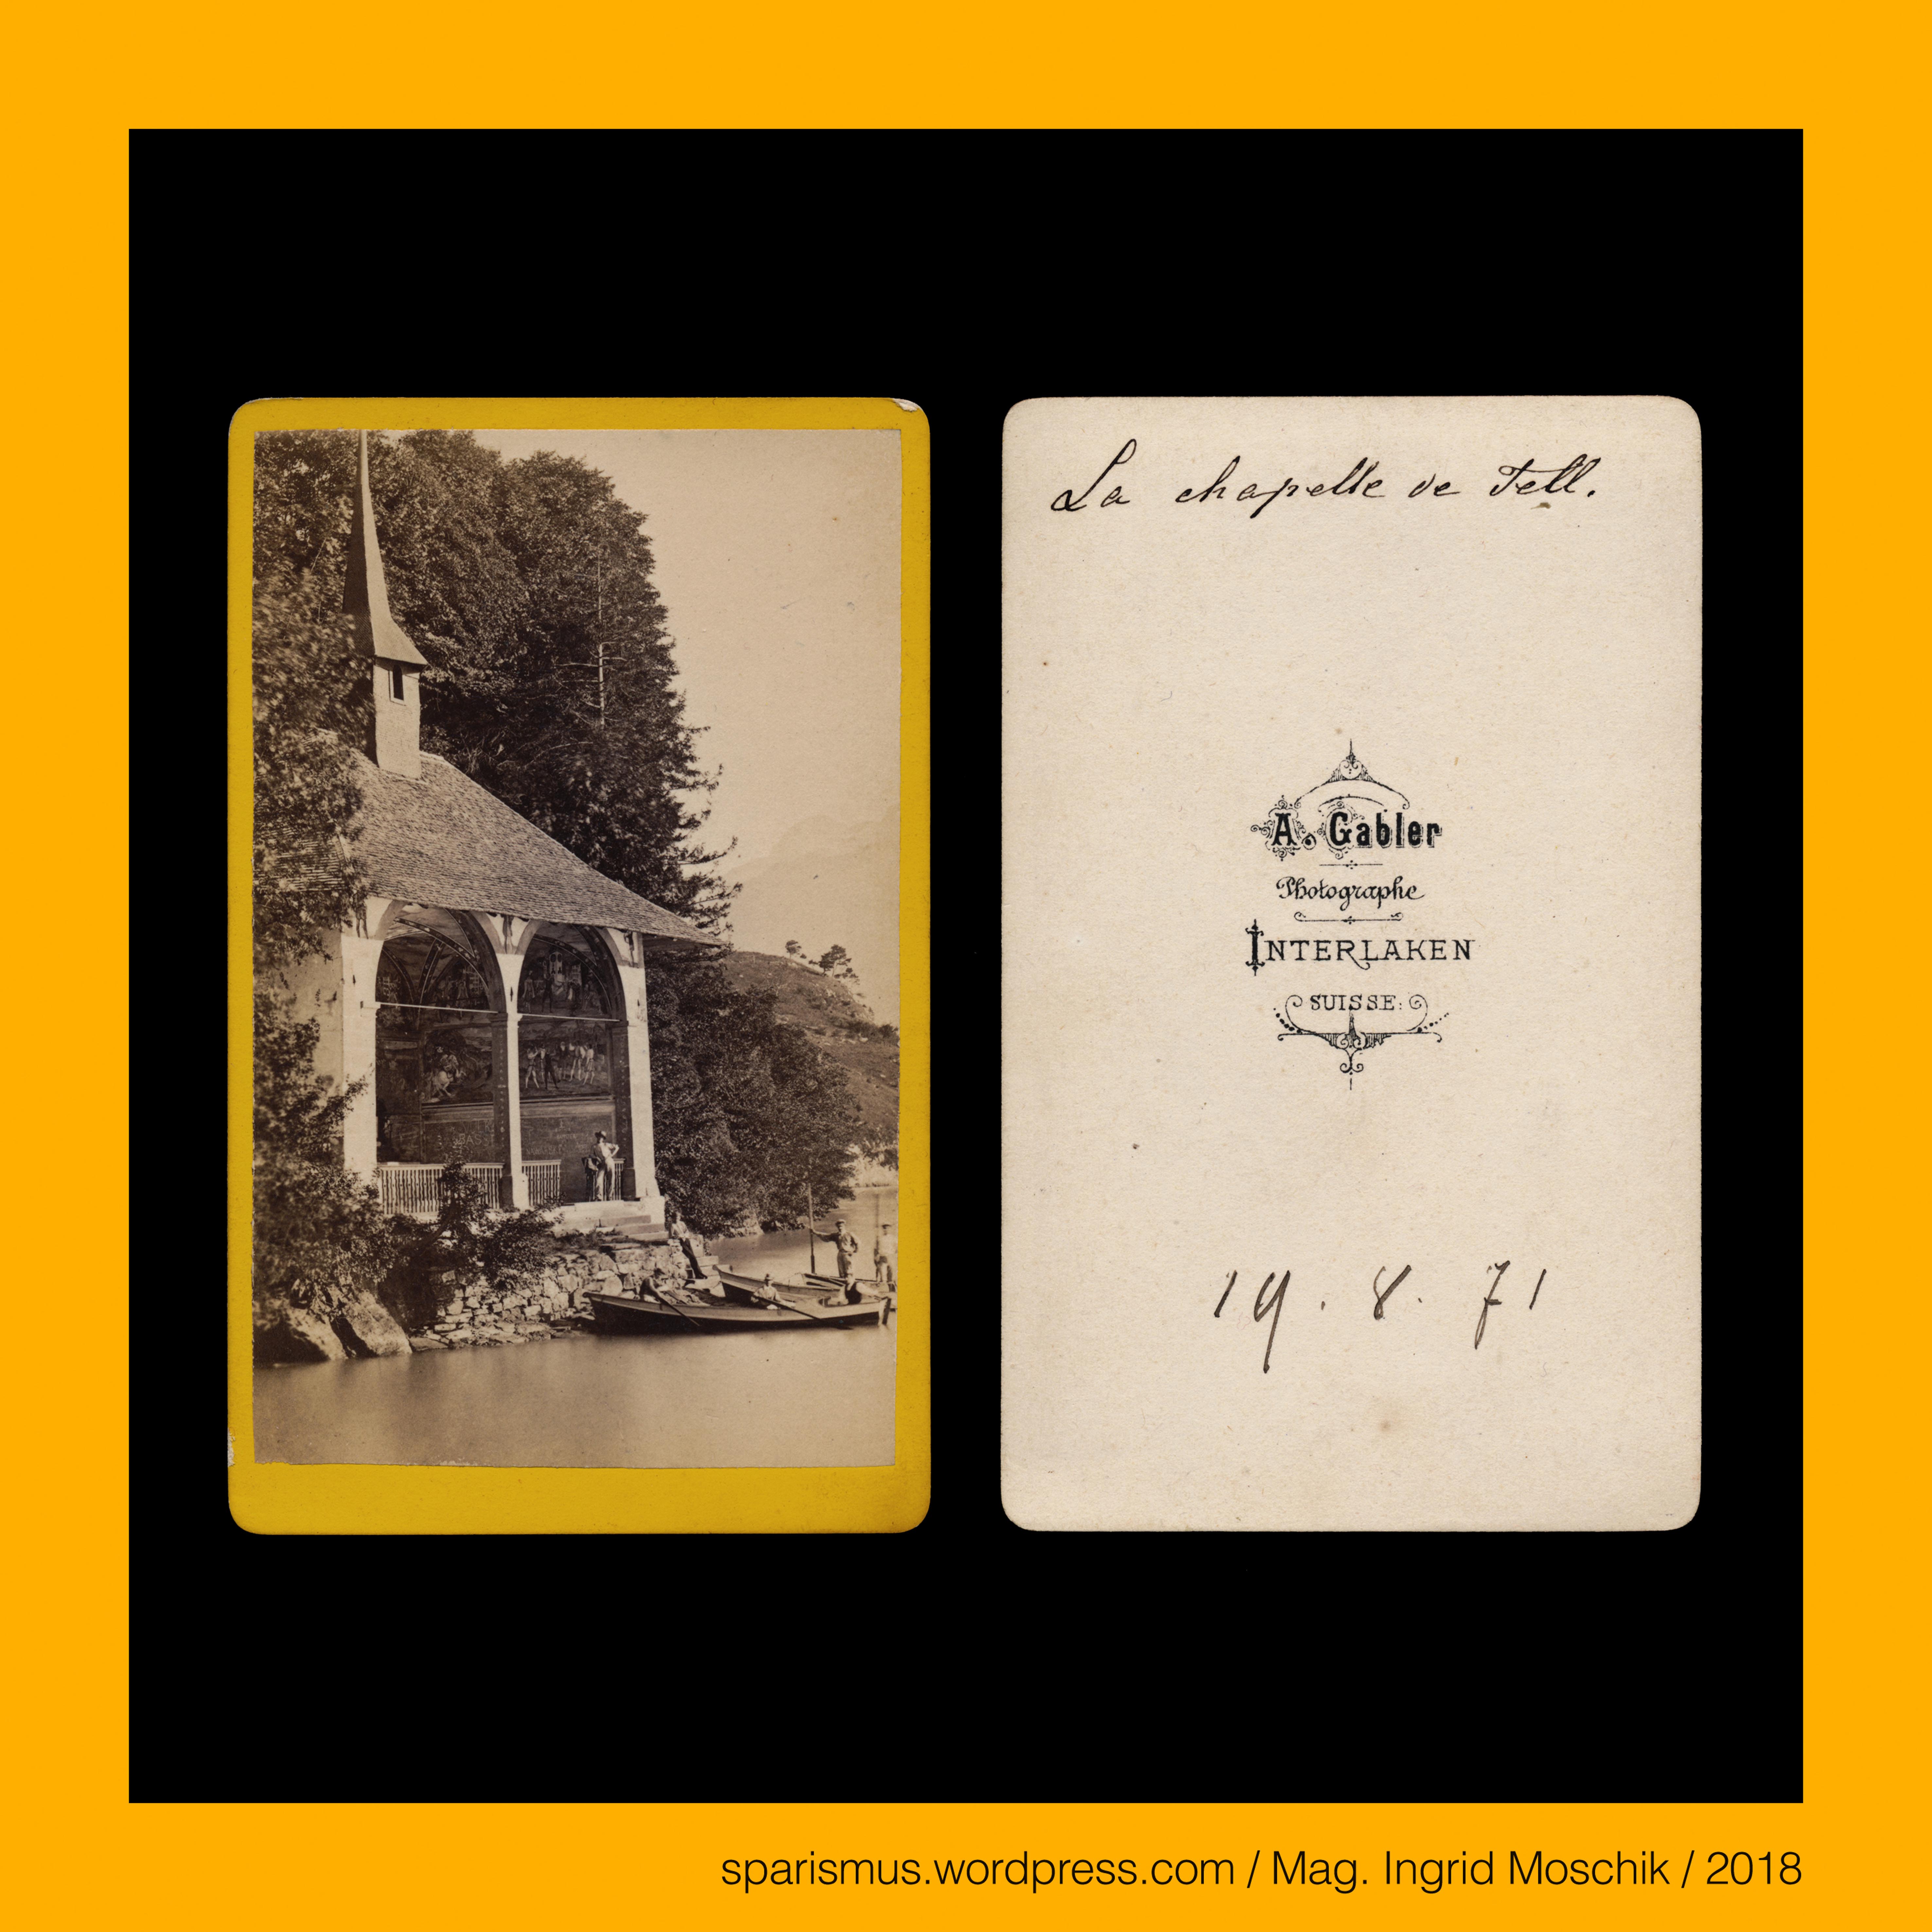 A GABLER A Gabler – Interlaken Johann Adam Gabler 1833